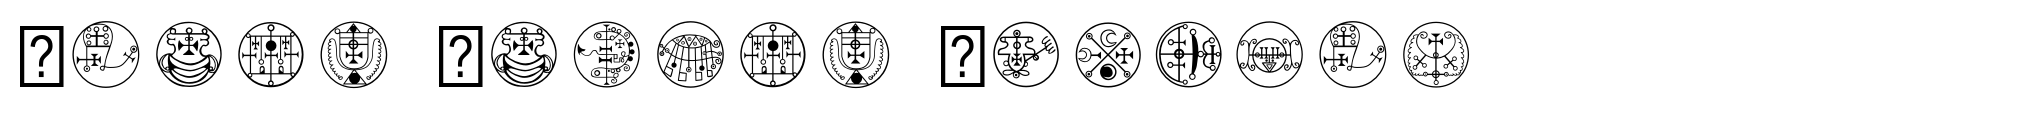 Black Magick Symbols image